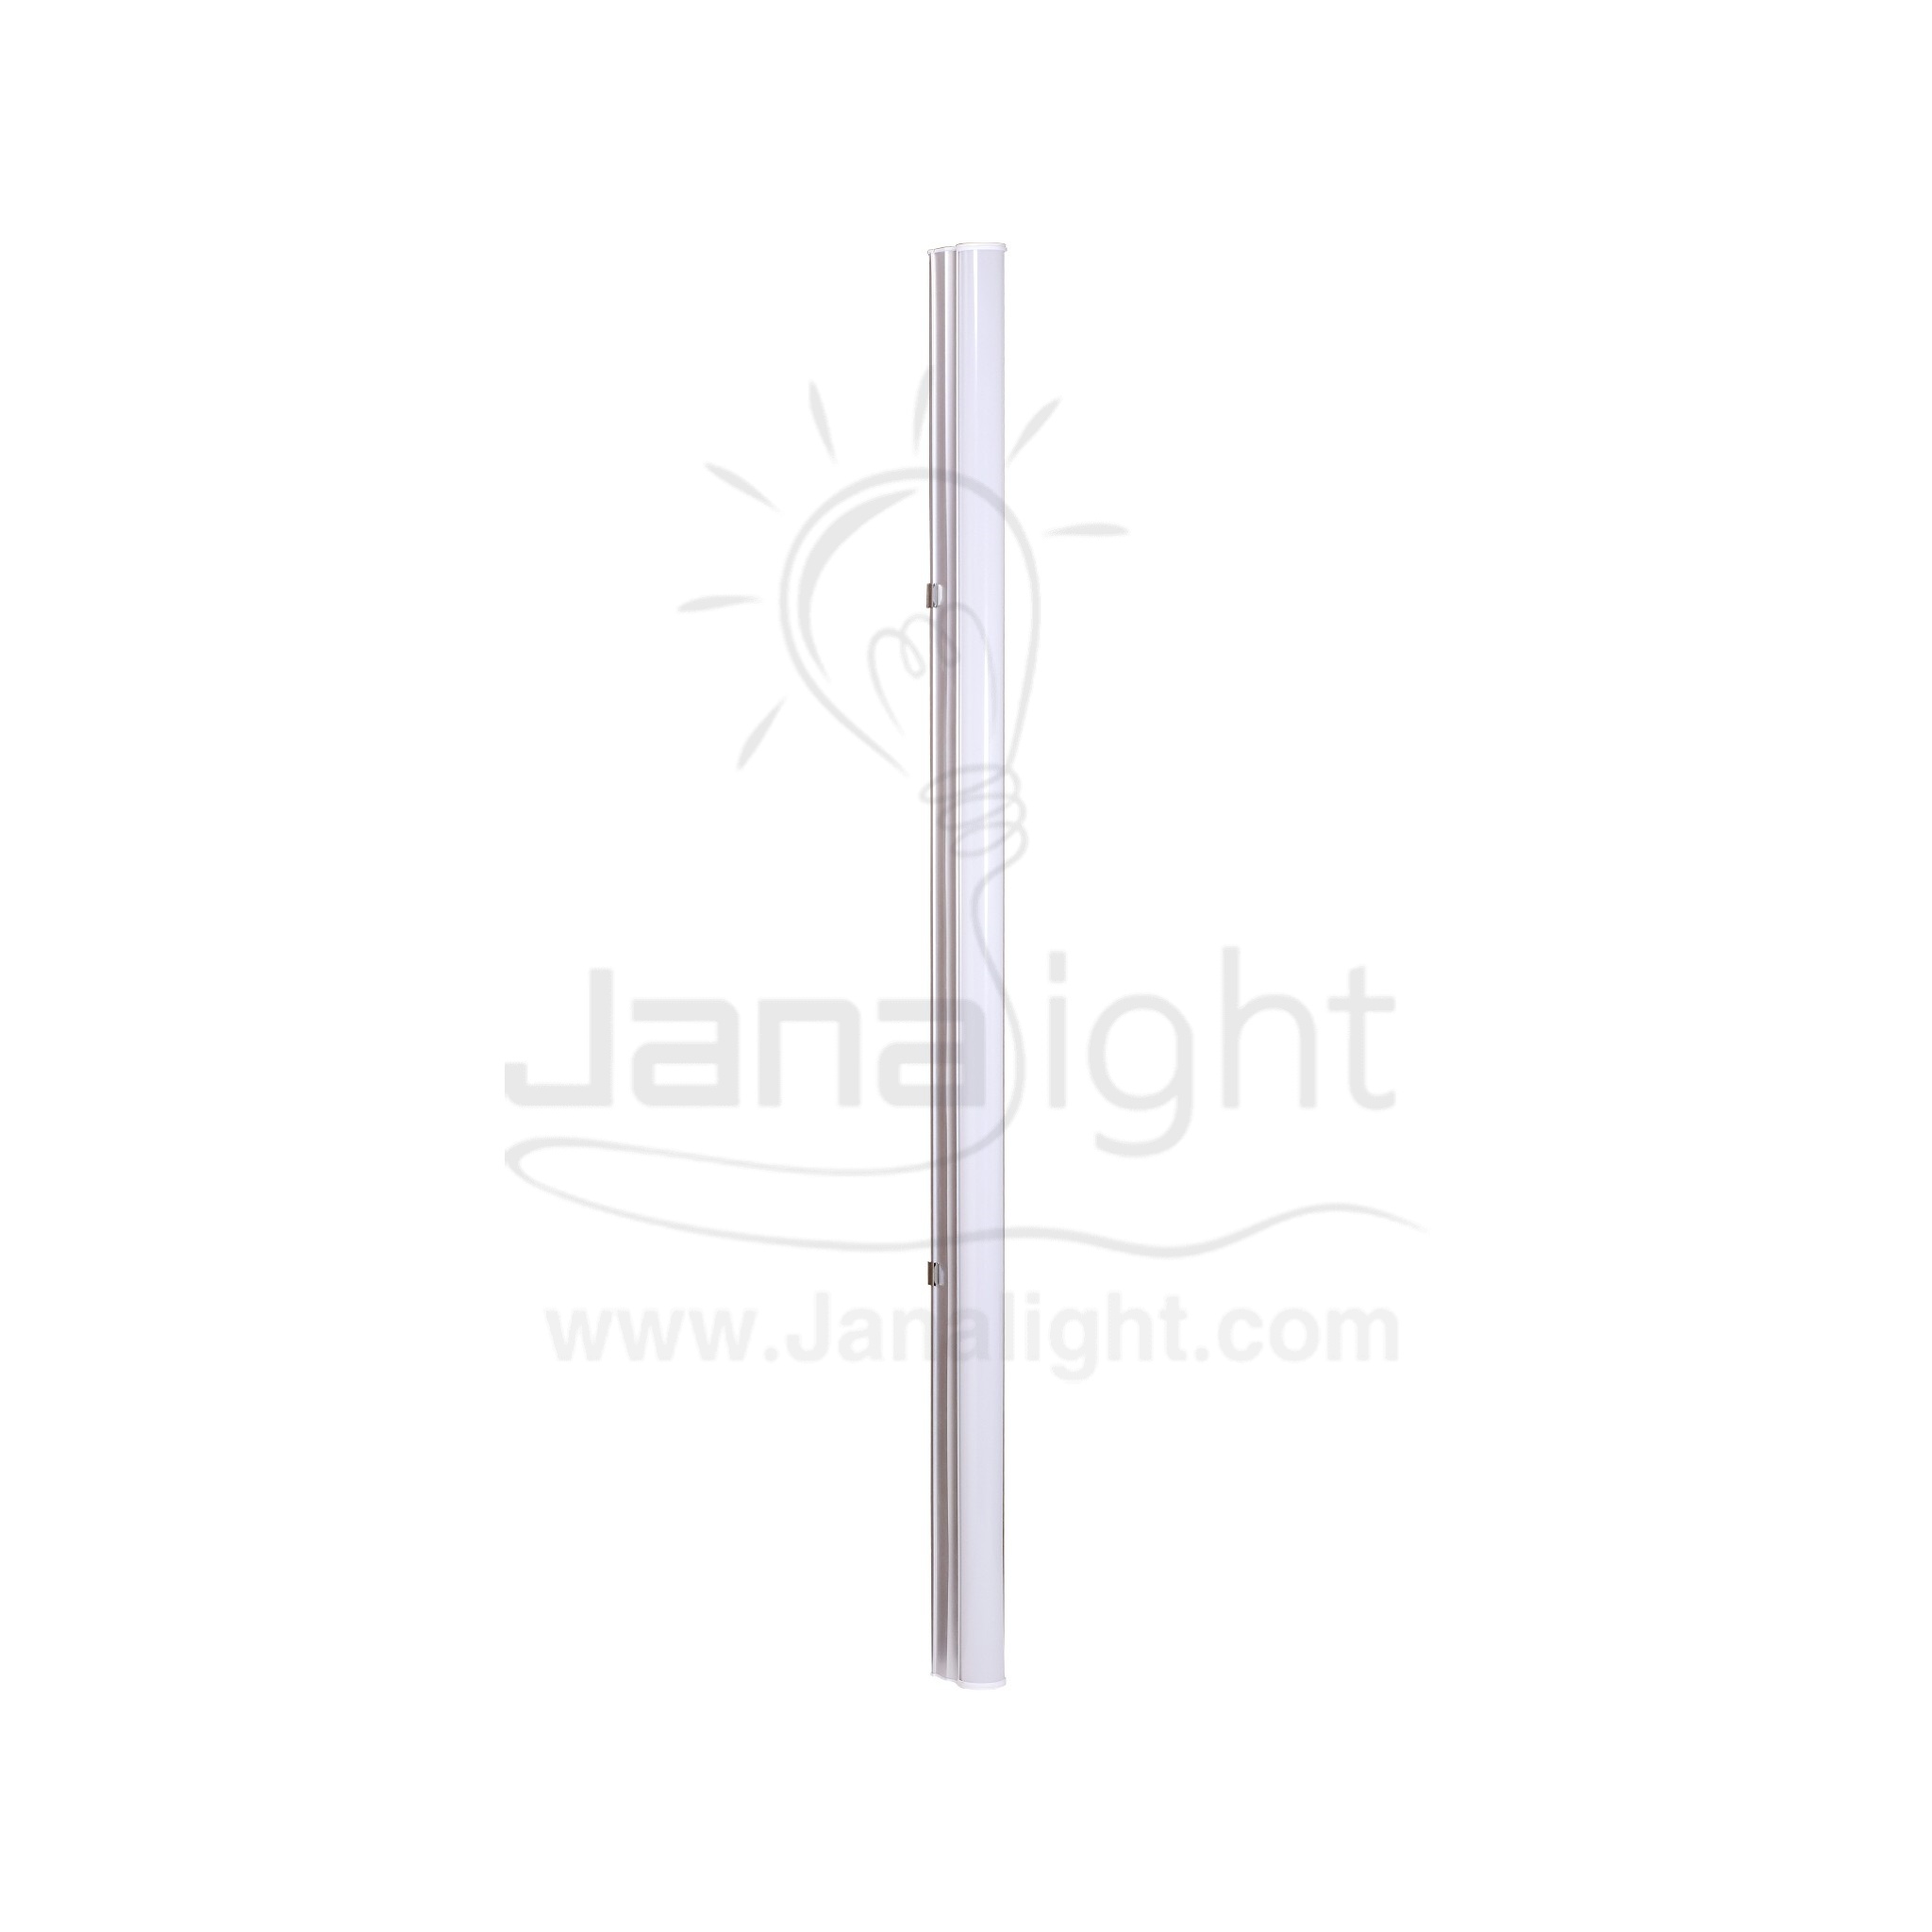 كشاف لد تي فايف 90 سم 14 وات ابيض جنى لايت T5 led lamp rectangle tube light 90cm 12w white Janalight 10322116(1)